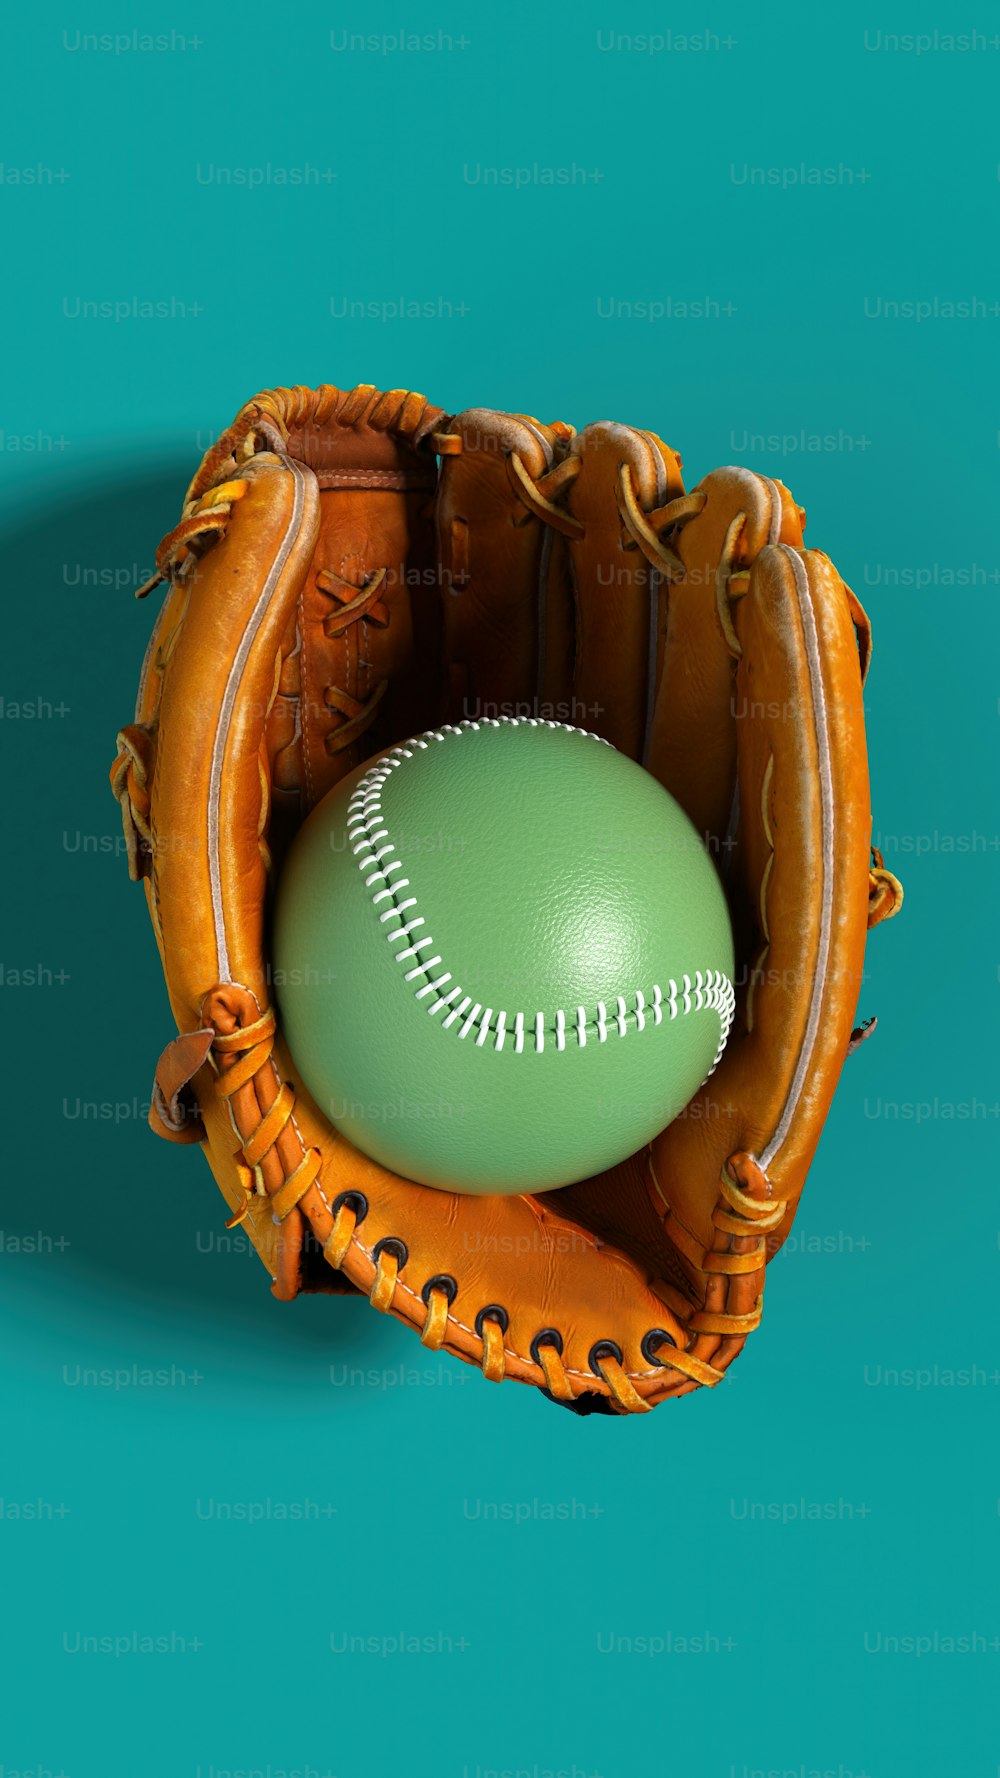 Une balle de baseball dans un gant de receveur sur fond bleu